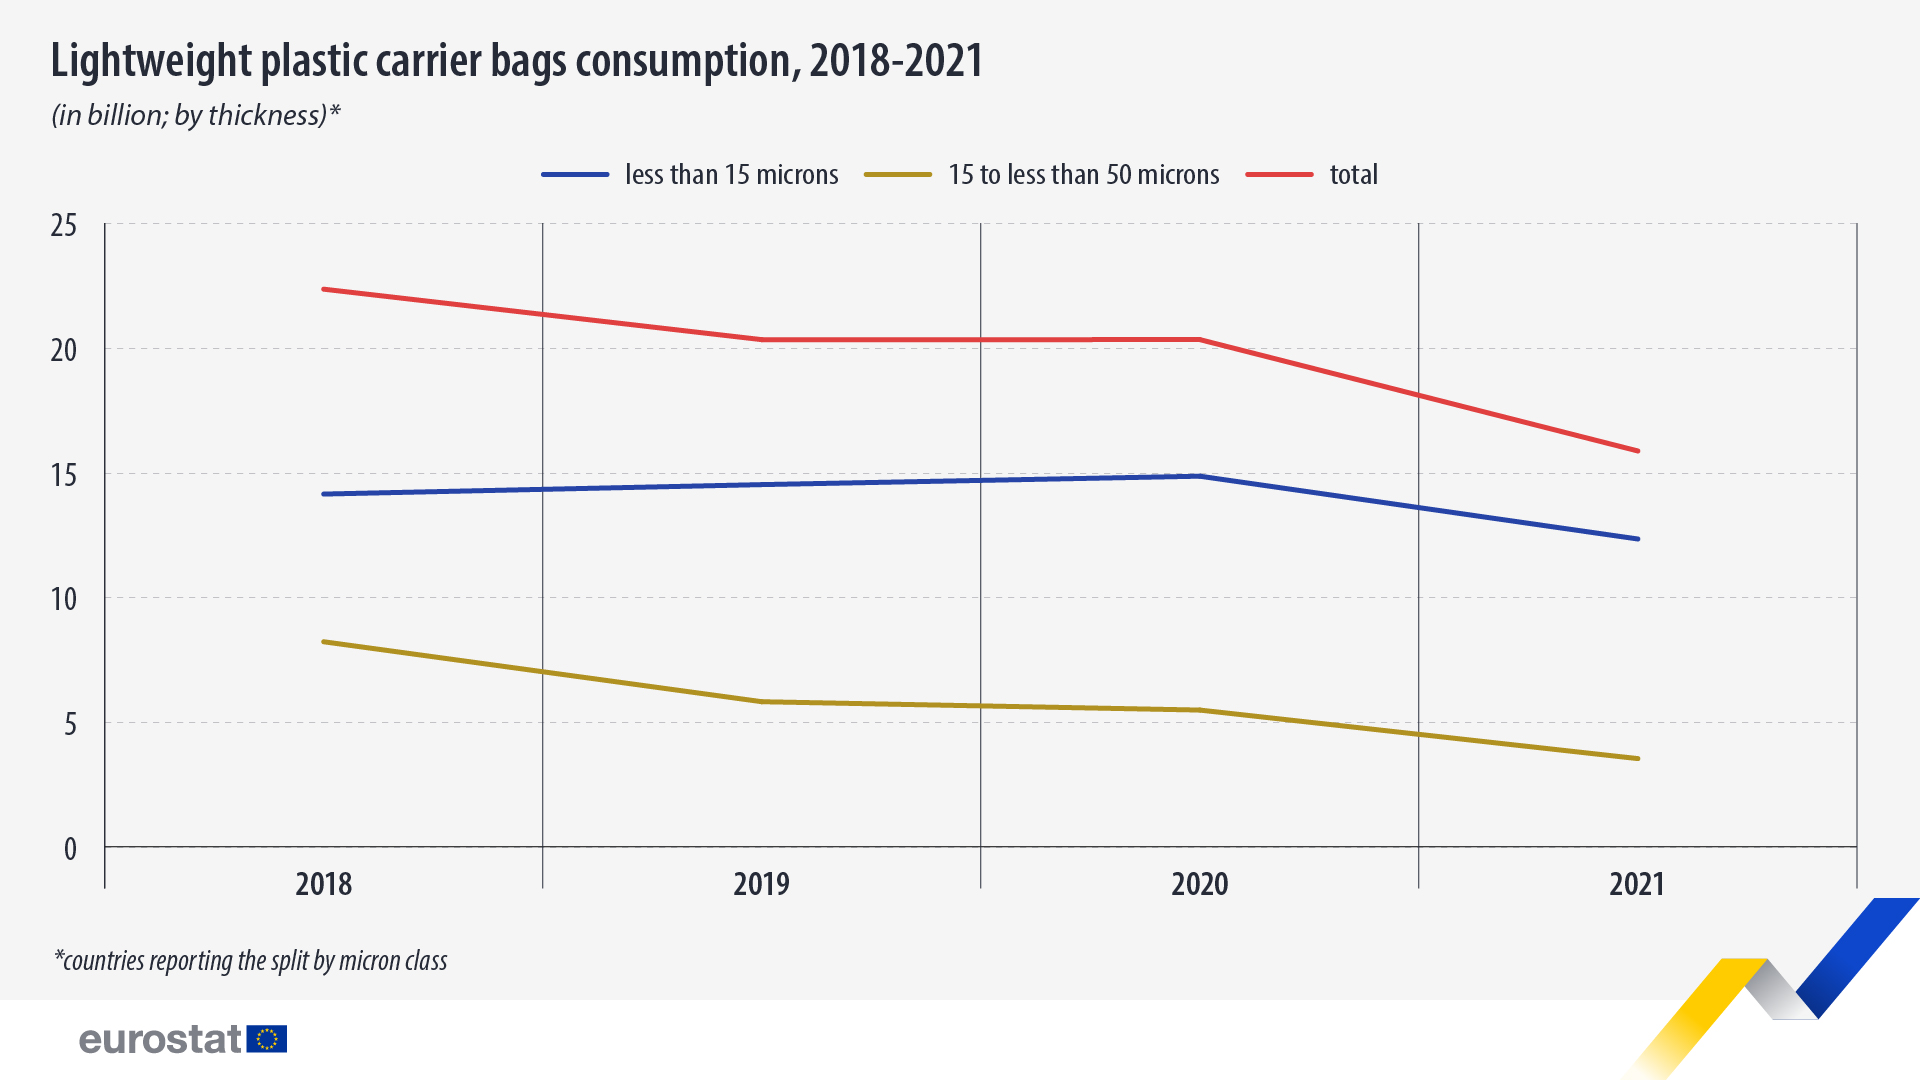 Gràfic de línies: consum de bosses de plàstic lleugeres, en milions, 2018-2021